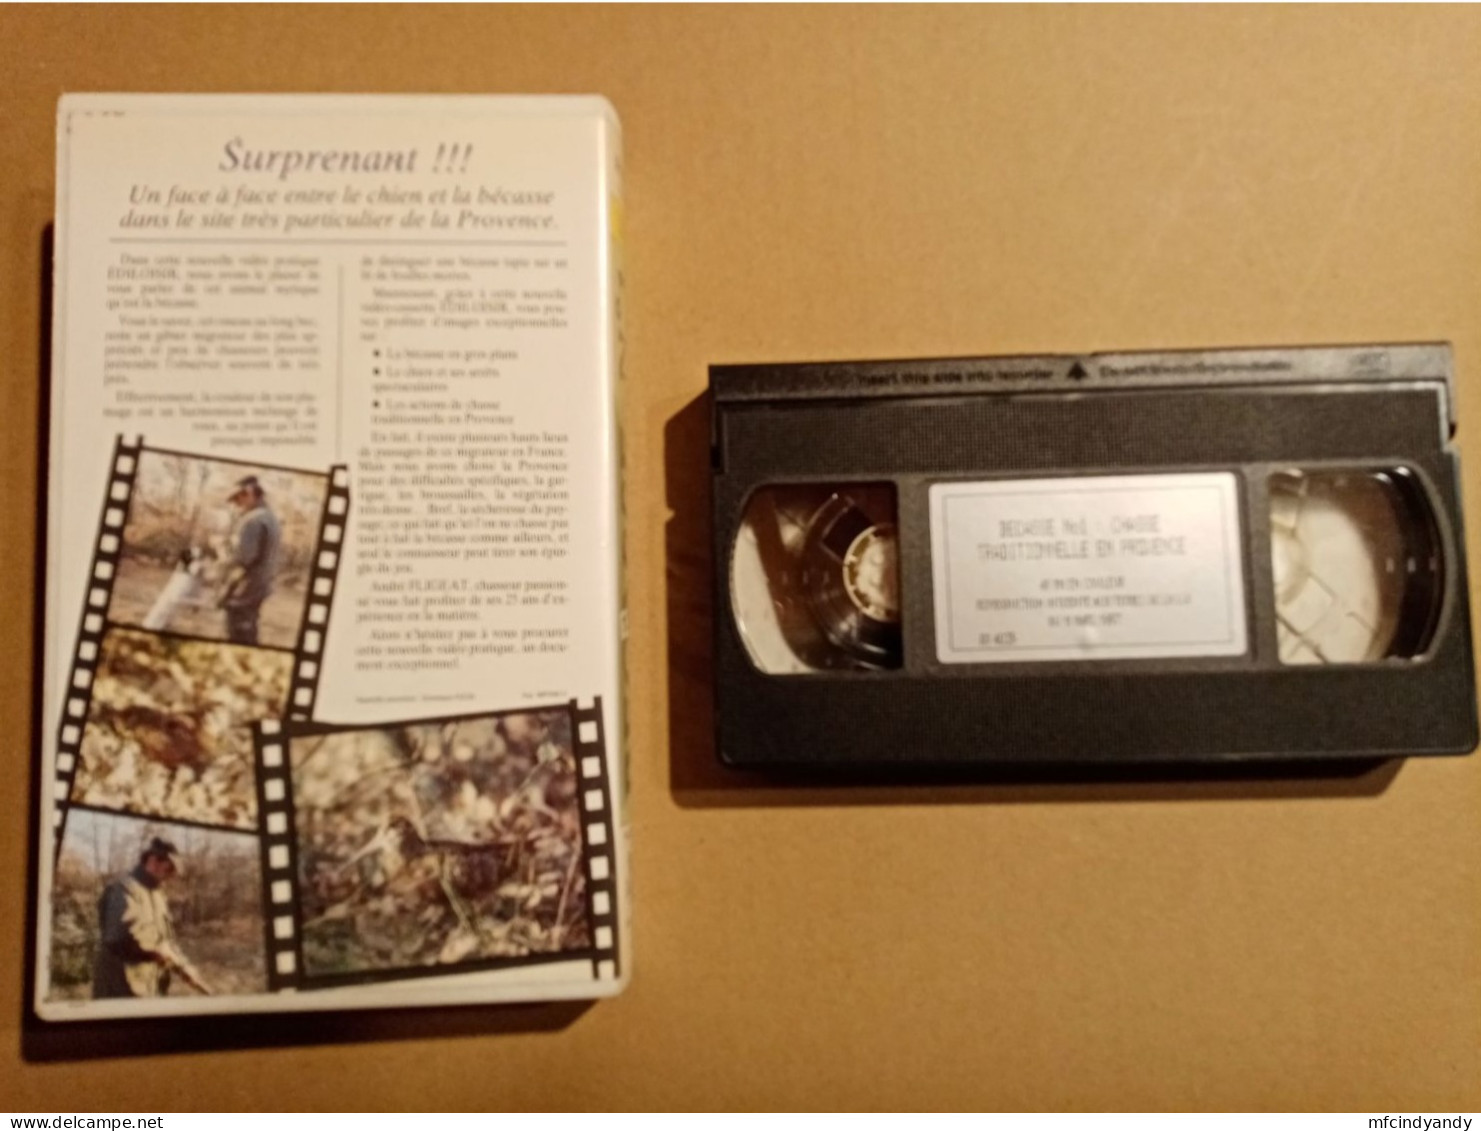 Cassette Vidéo VHS  Bécasse N°1  Chasse Traditionnelle En Provence - Documentales